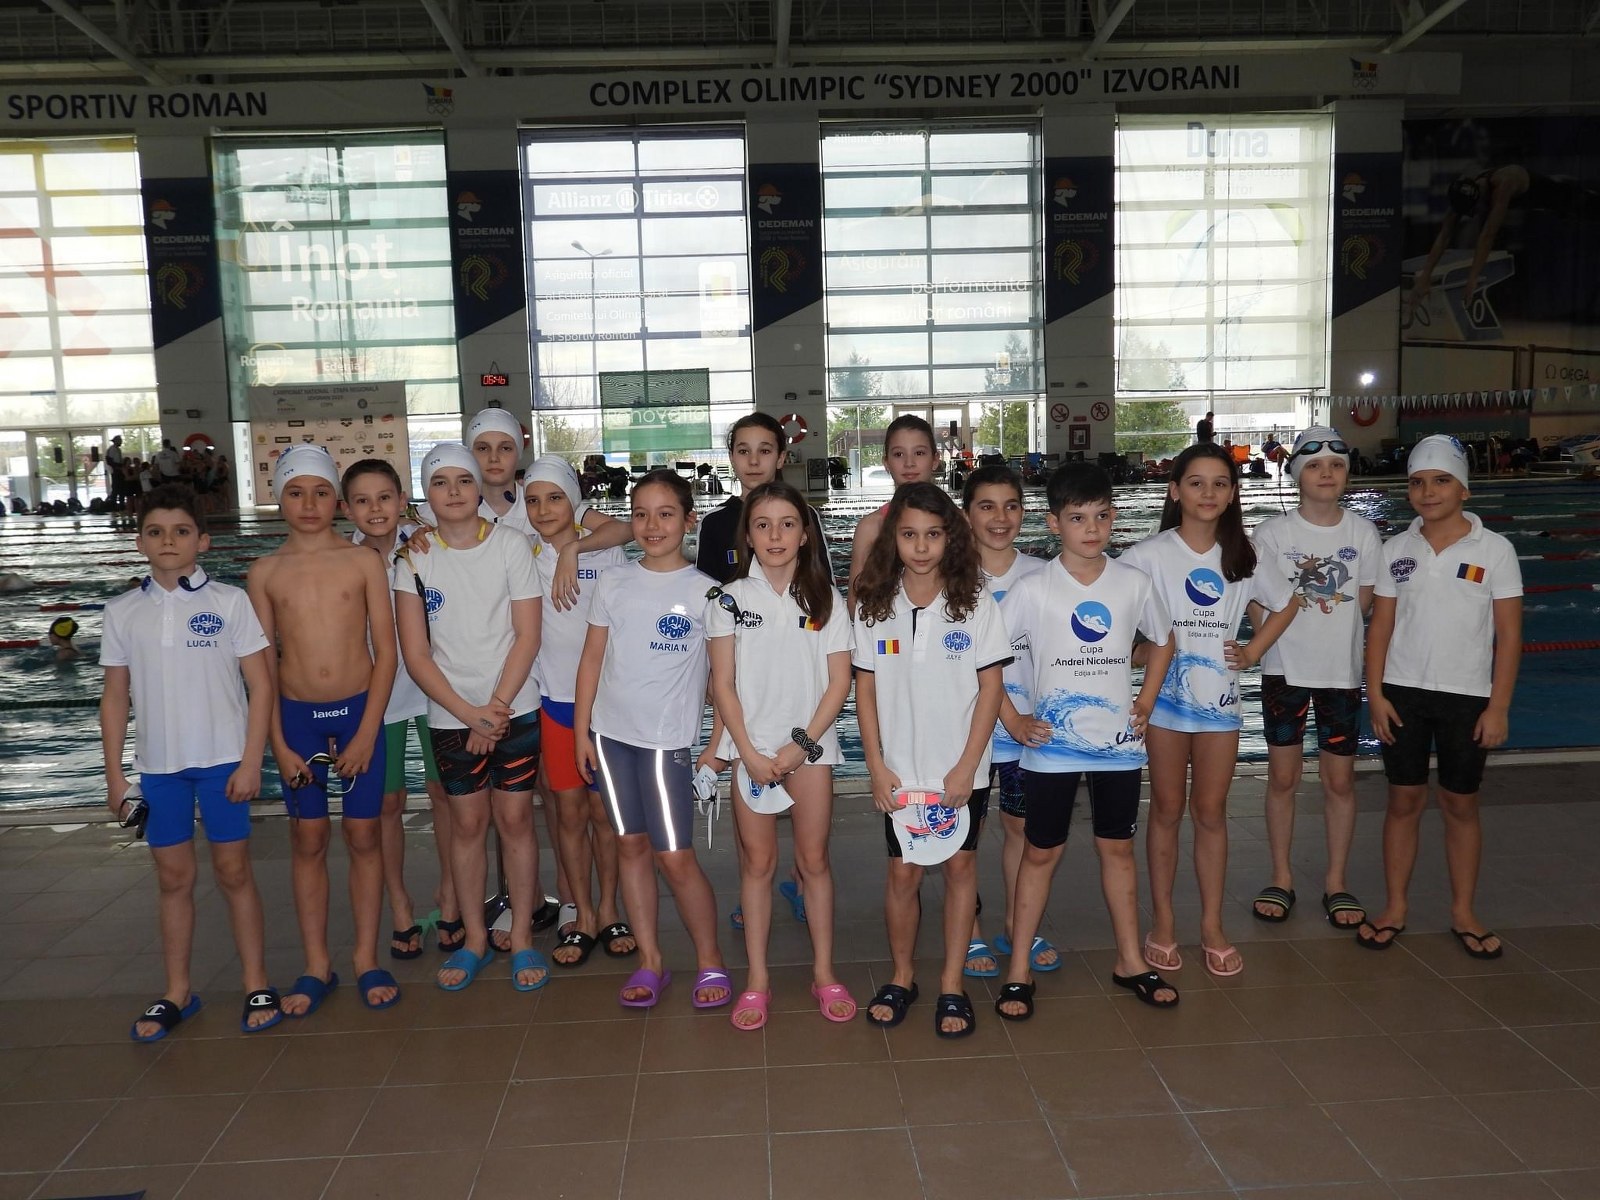 Clubul Aqua Sport a făcut o figură impresionantă la Etapa Regională de natatie pentru copii cu varsta cuprinsă între 10-11 ani, cu 25 de sportivi care s-au calificat să ia parte la Campionatul Național de Natație din această vară. Acestia au reusit să câștige nu mai puțin de 13 medalii, 4 de aur, 4 de argint și 5 de bronz, într-o competiție organizată la Bazinul Olimpic de la Izvorani de către Federatia Romana de Natatie si Pentatlon Modern – FRNPM.